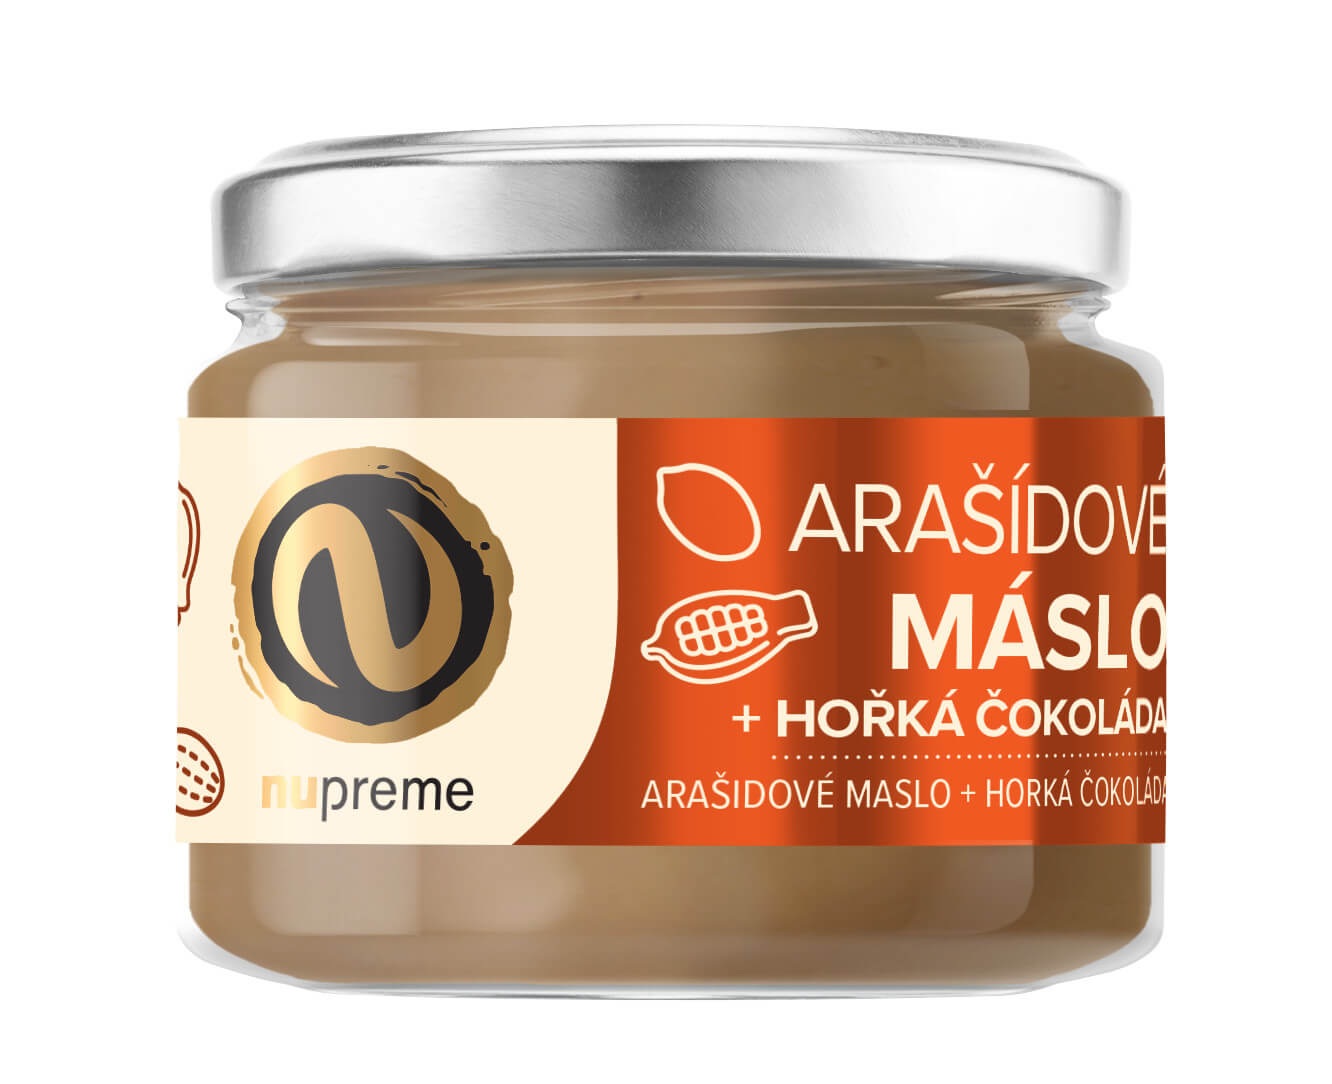 Zobrazit detail výrobku Nupreme Nupreme Arašídové máslo s hořkou čokoládou 220 g + 2 měsíce na vrácení zboží